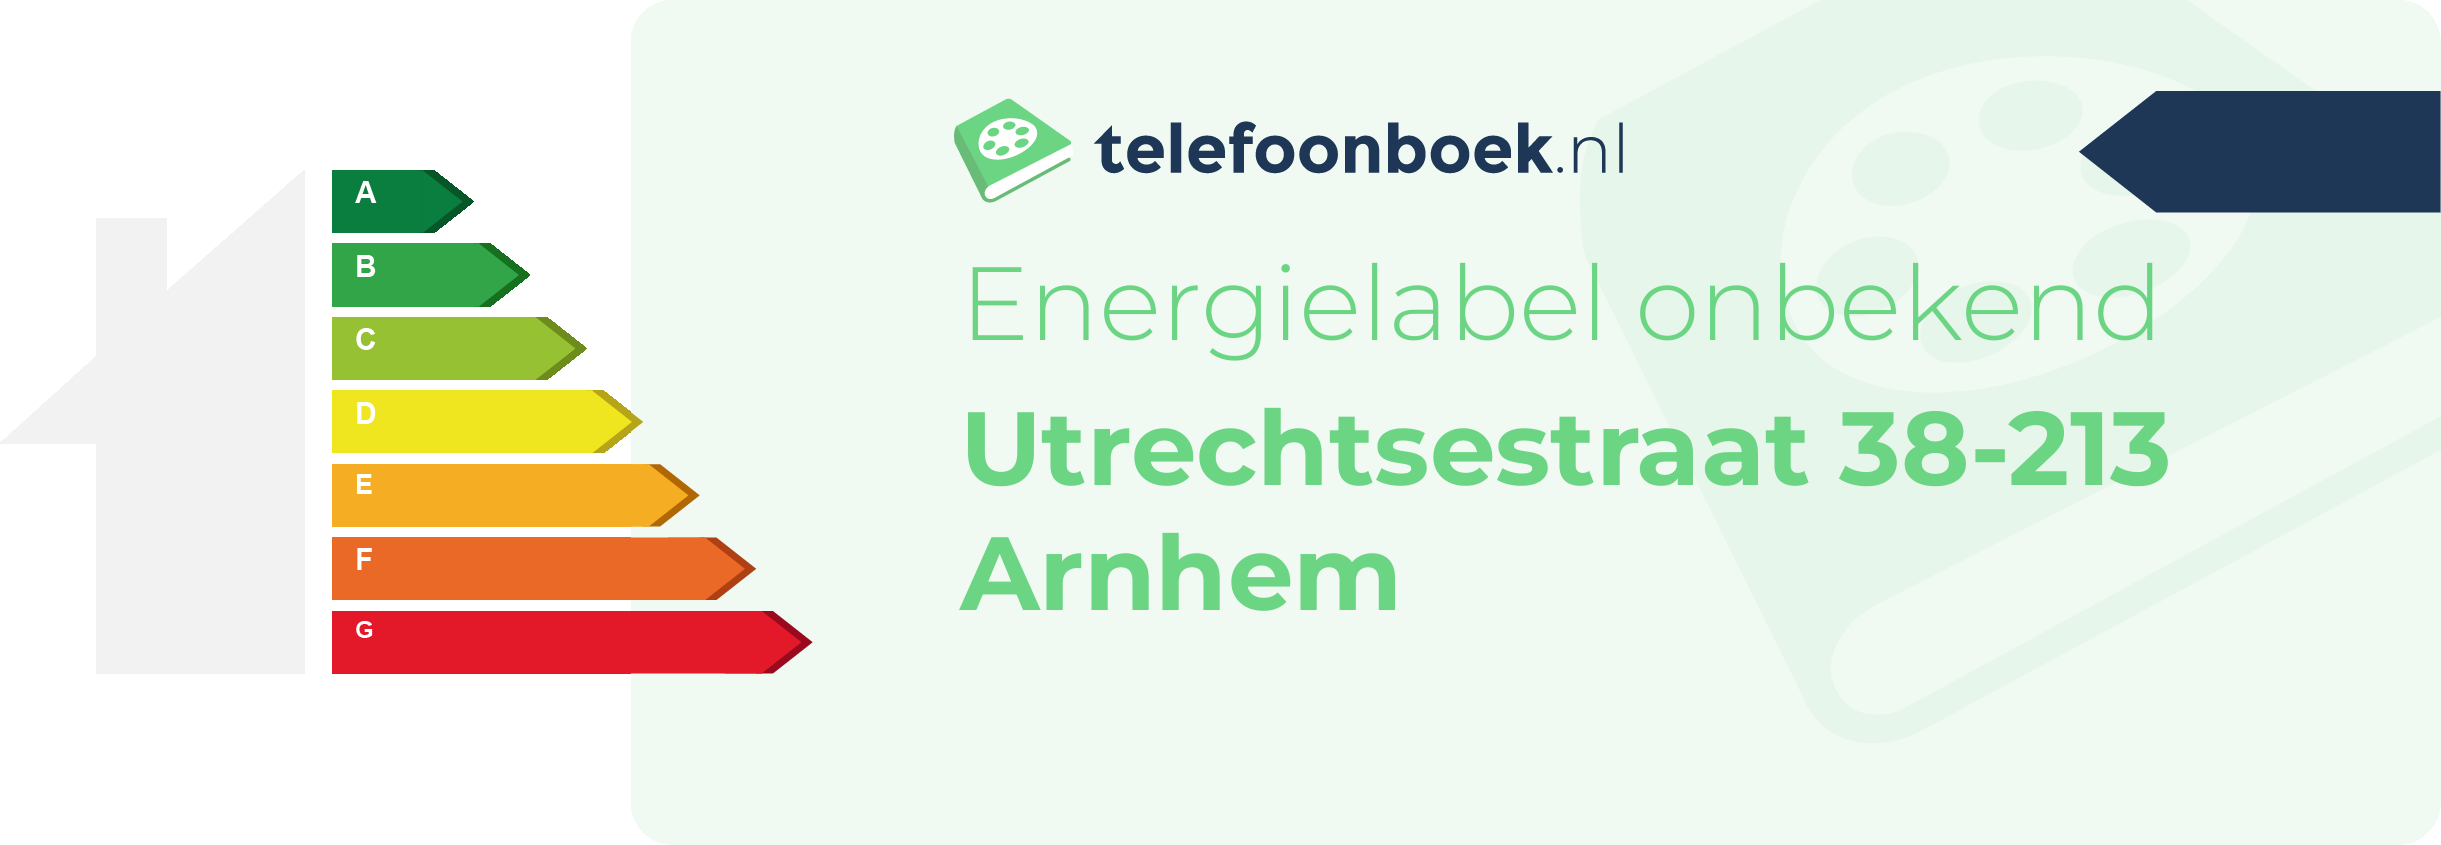 Energielabel Utrechtsestraat 38-213 Arnhem